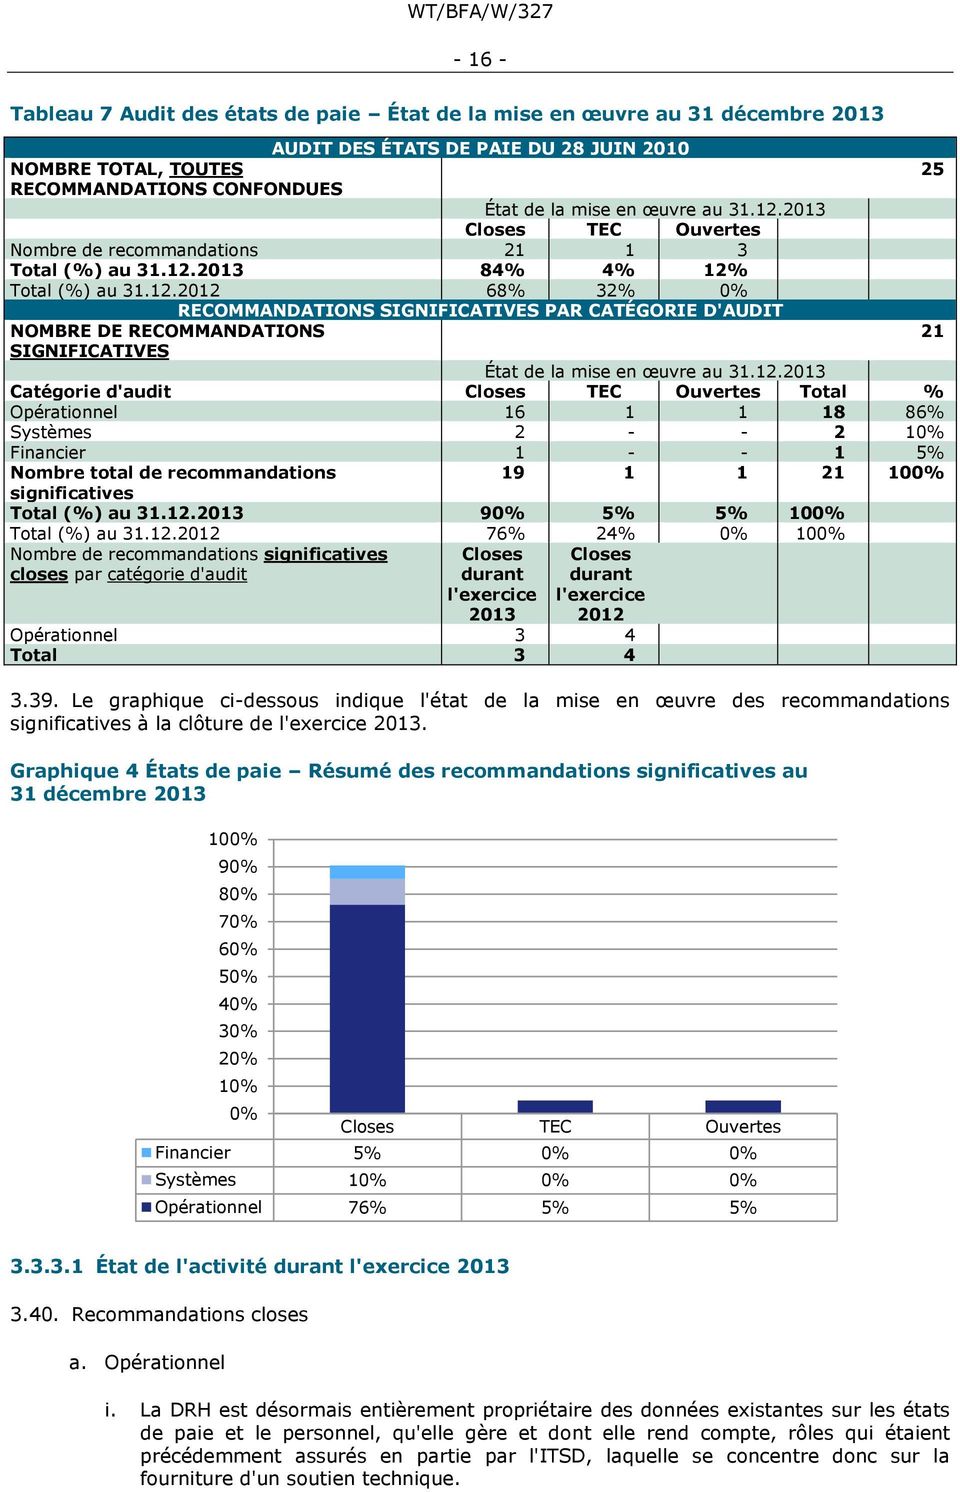 12.2013 Catégorie d'audit Closes TEC Ouvertes Total % Opérationnel 16 1 1 18 86% Systèmes 2 - - 2 10% Financier 1 - - 1 5% Nombre total de recommandations 19 1 1 21 100% significatives Total (%) au